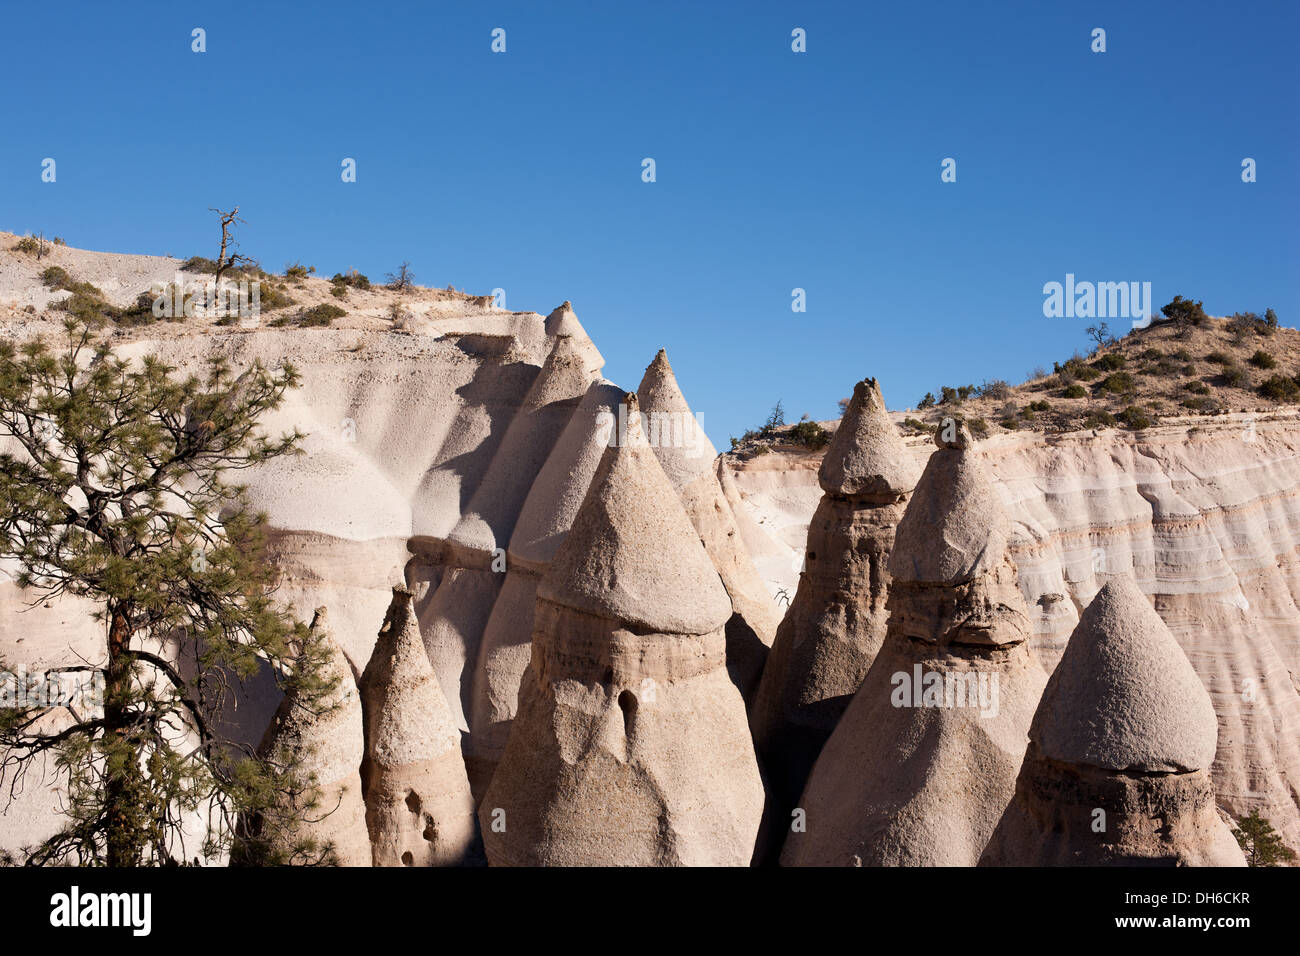 Roches en forme de cône sculptées dans un gisement volcanique (pierre ponce, cendres).Monument national de Kasha-Katuwe Tent Rock, comté de Sandoval, Nouveau-Mexique, États-Unis. Banque D'Images